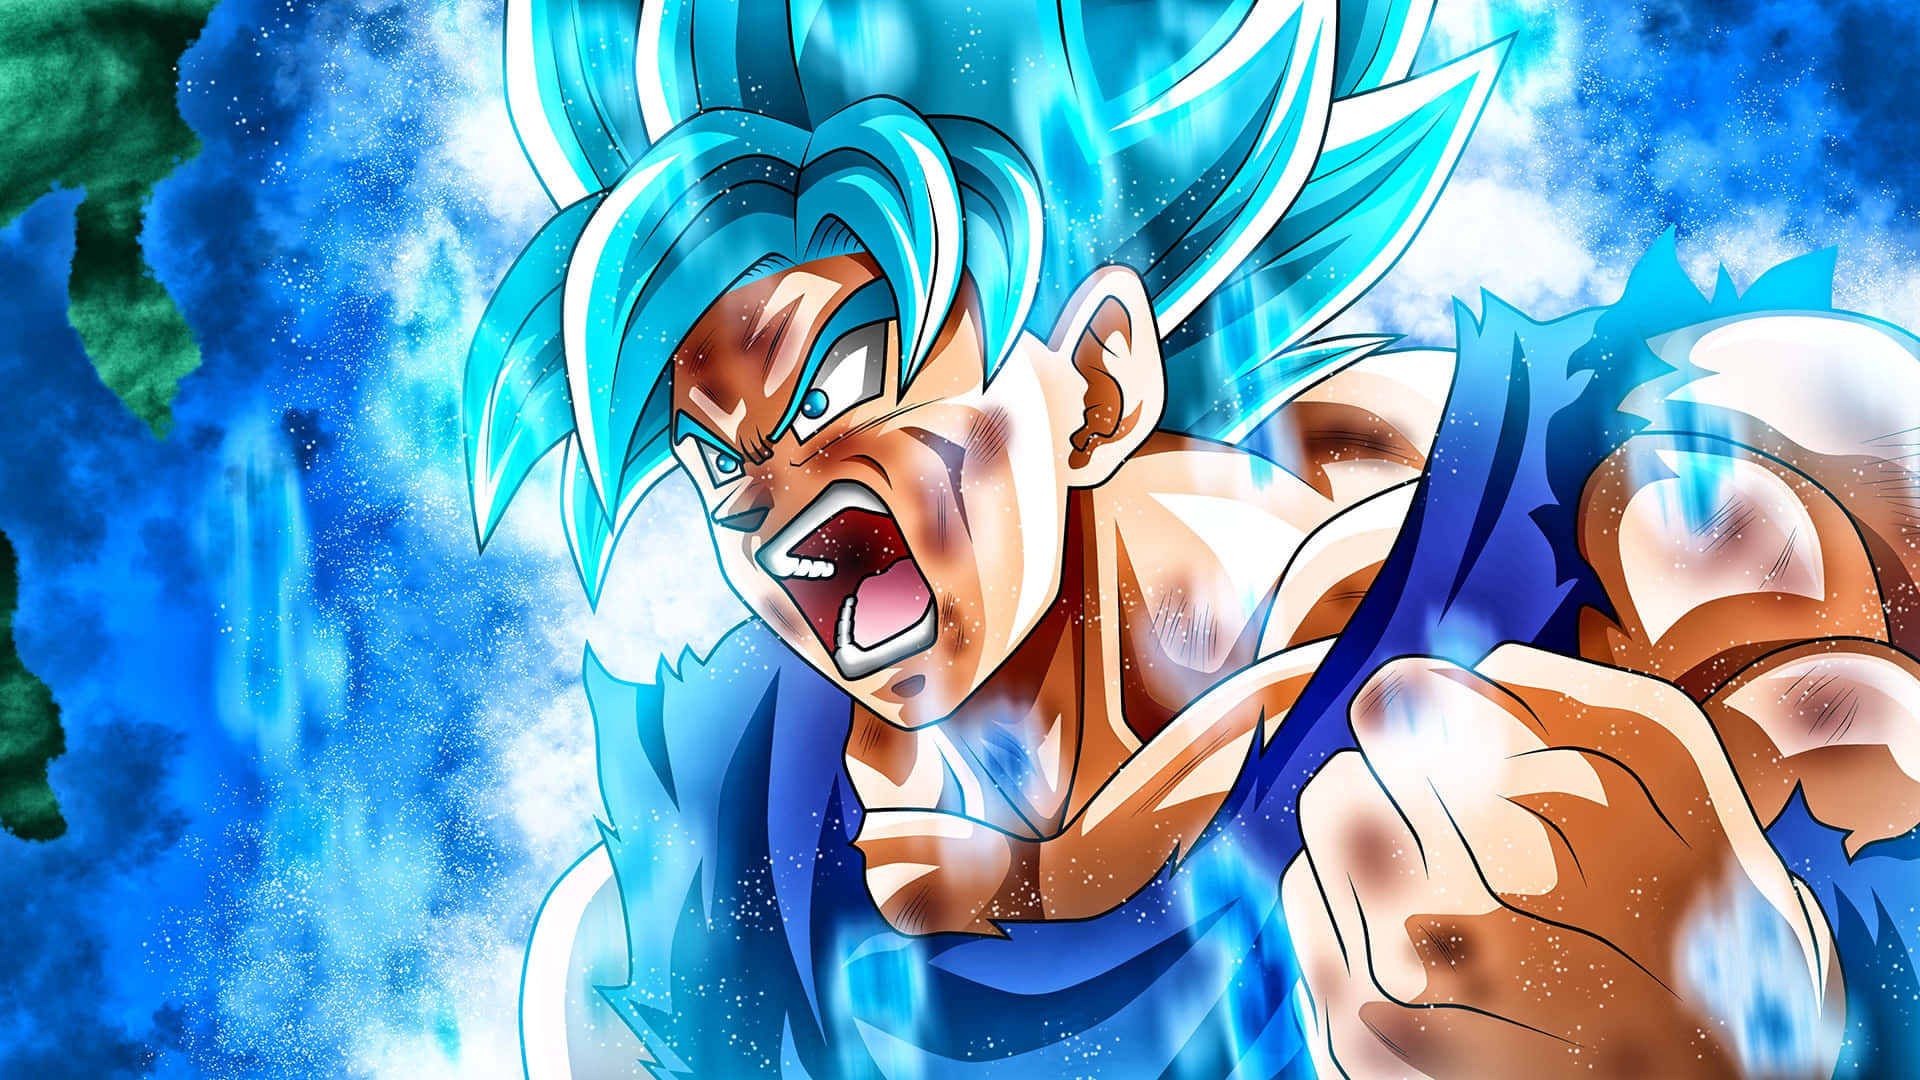 Imagemdo Goku Azul Furioso.